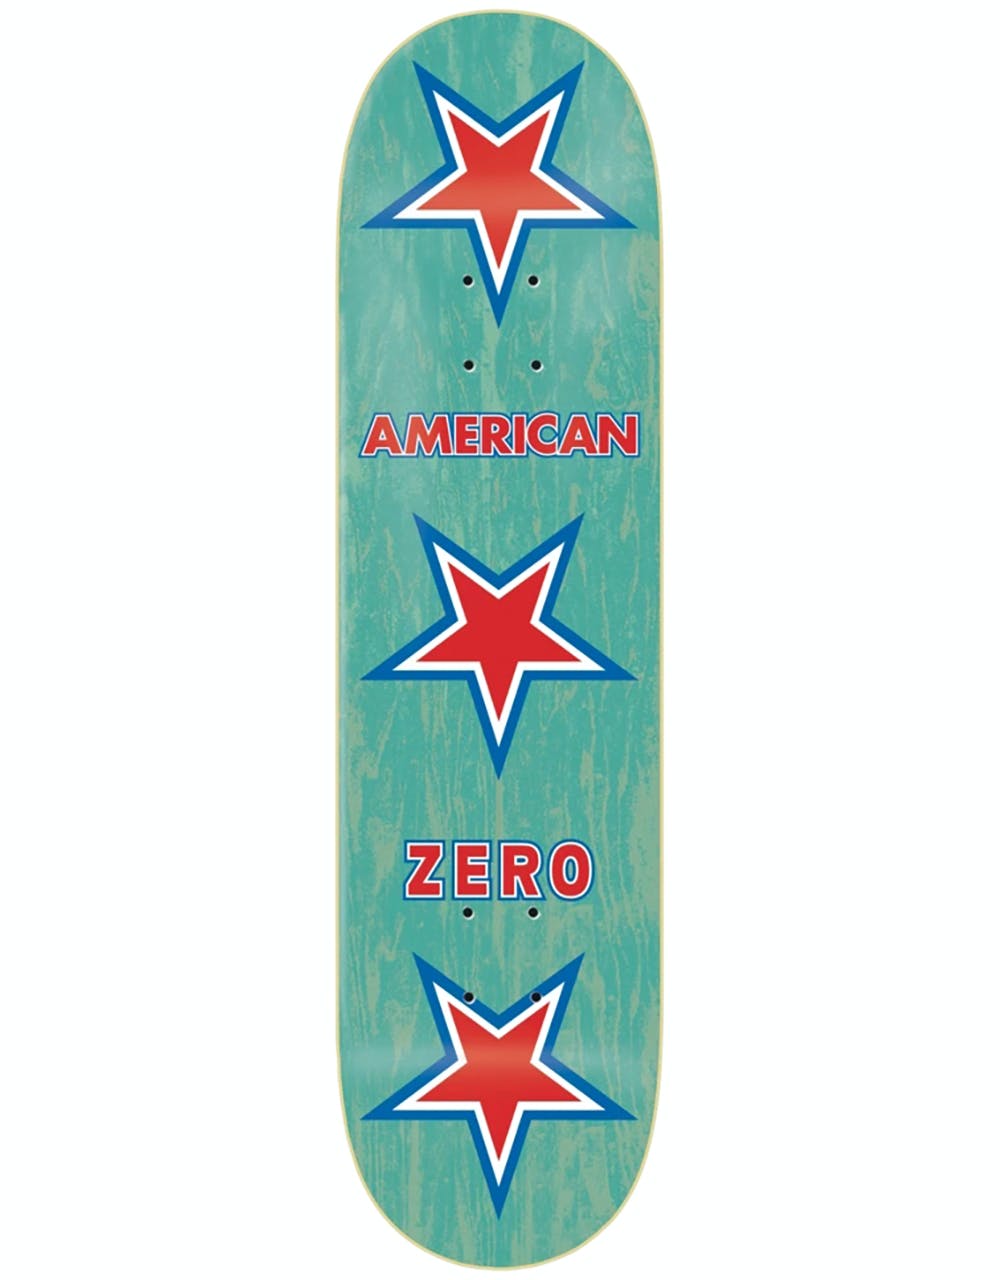 Zero American Zero Skateboard Deck - 8.625"